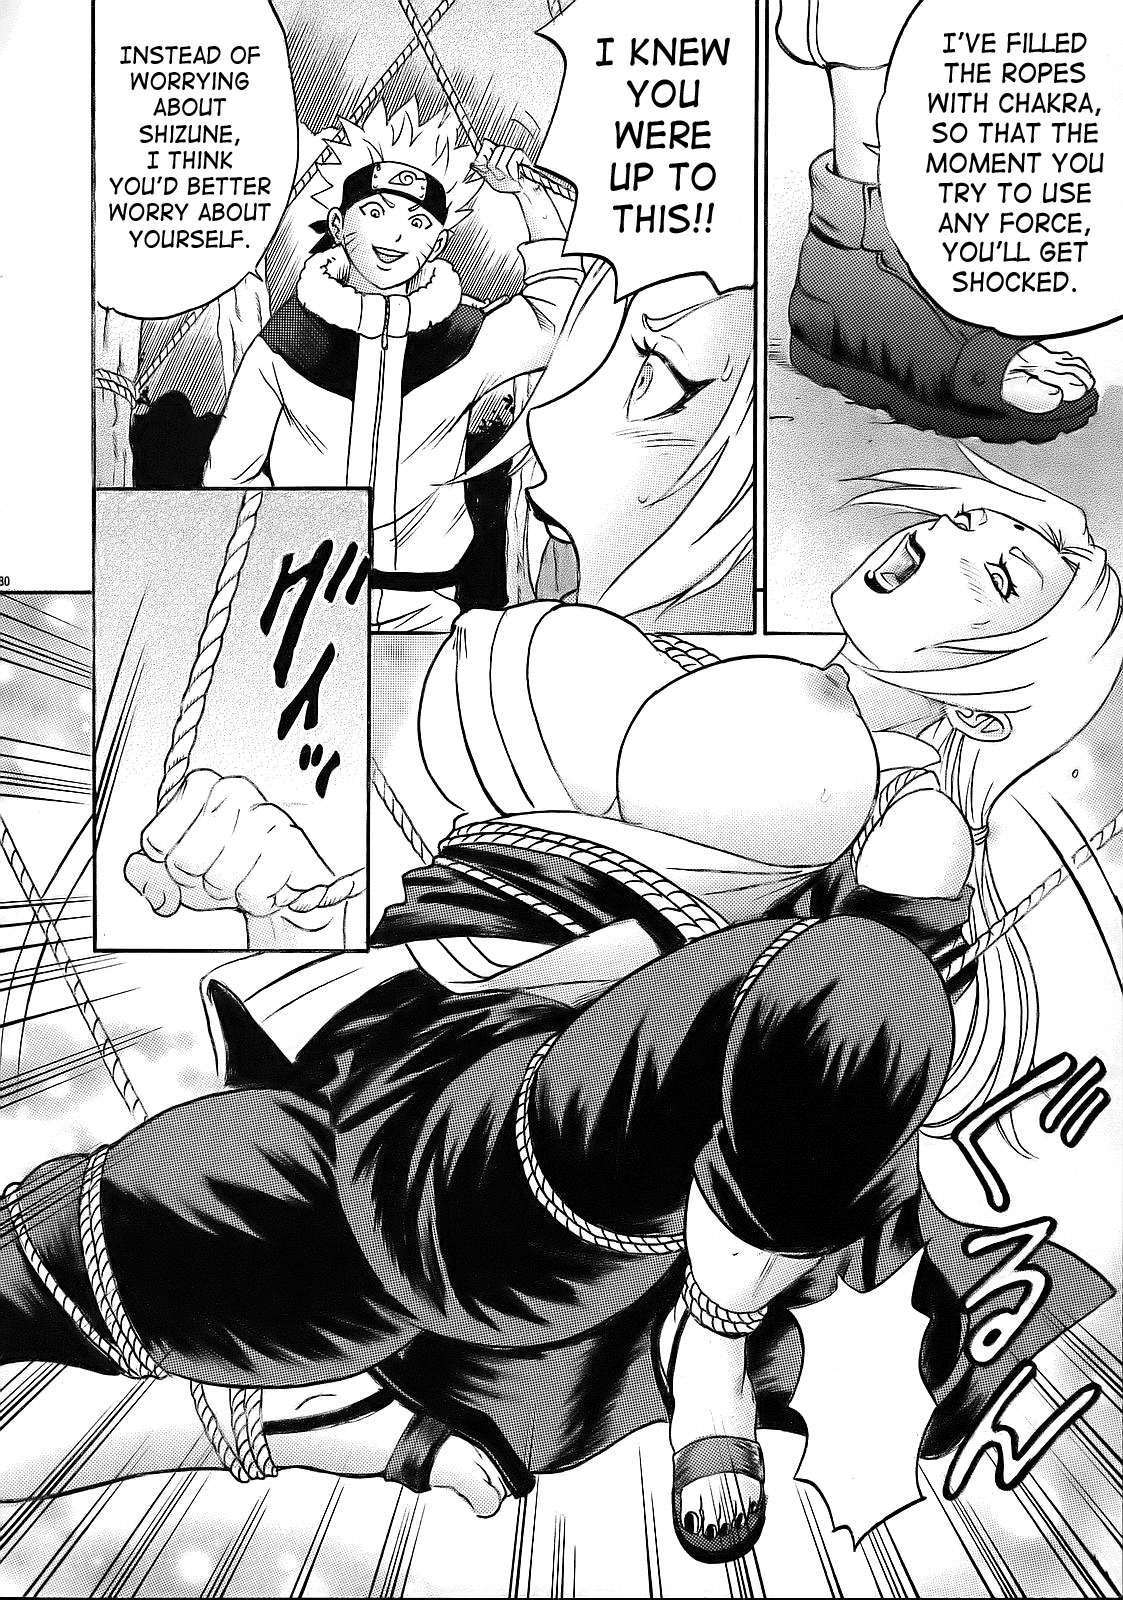 PM 10 - Indecent Ninja Training naruto 29 hentai manga